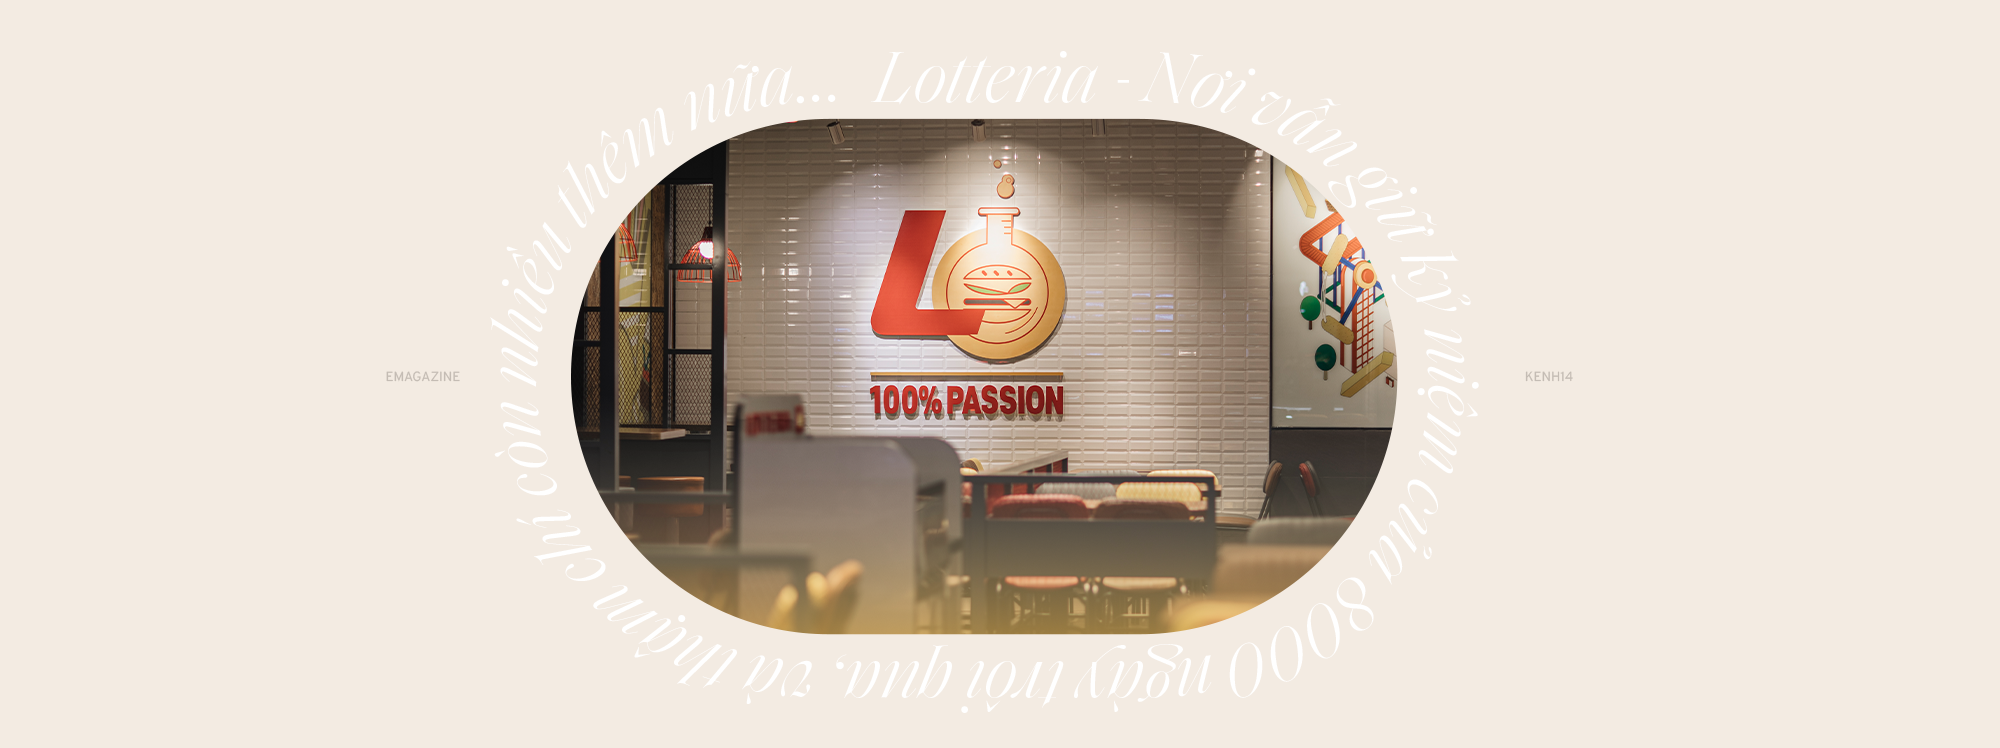 Lotteria - Nơi vẫn giữ kỷ niệm của 8000 ngày trôi qua, và thậm chí còn nhiều thêm nữa - Ảnh 1.